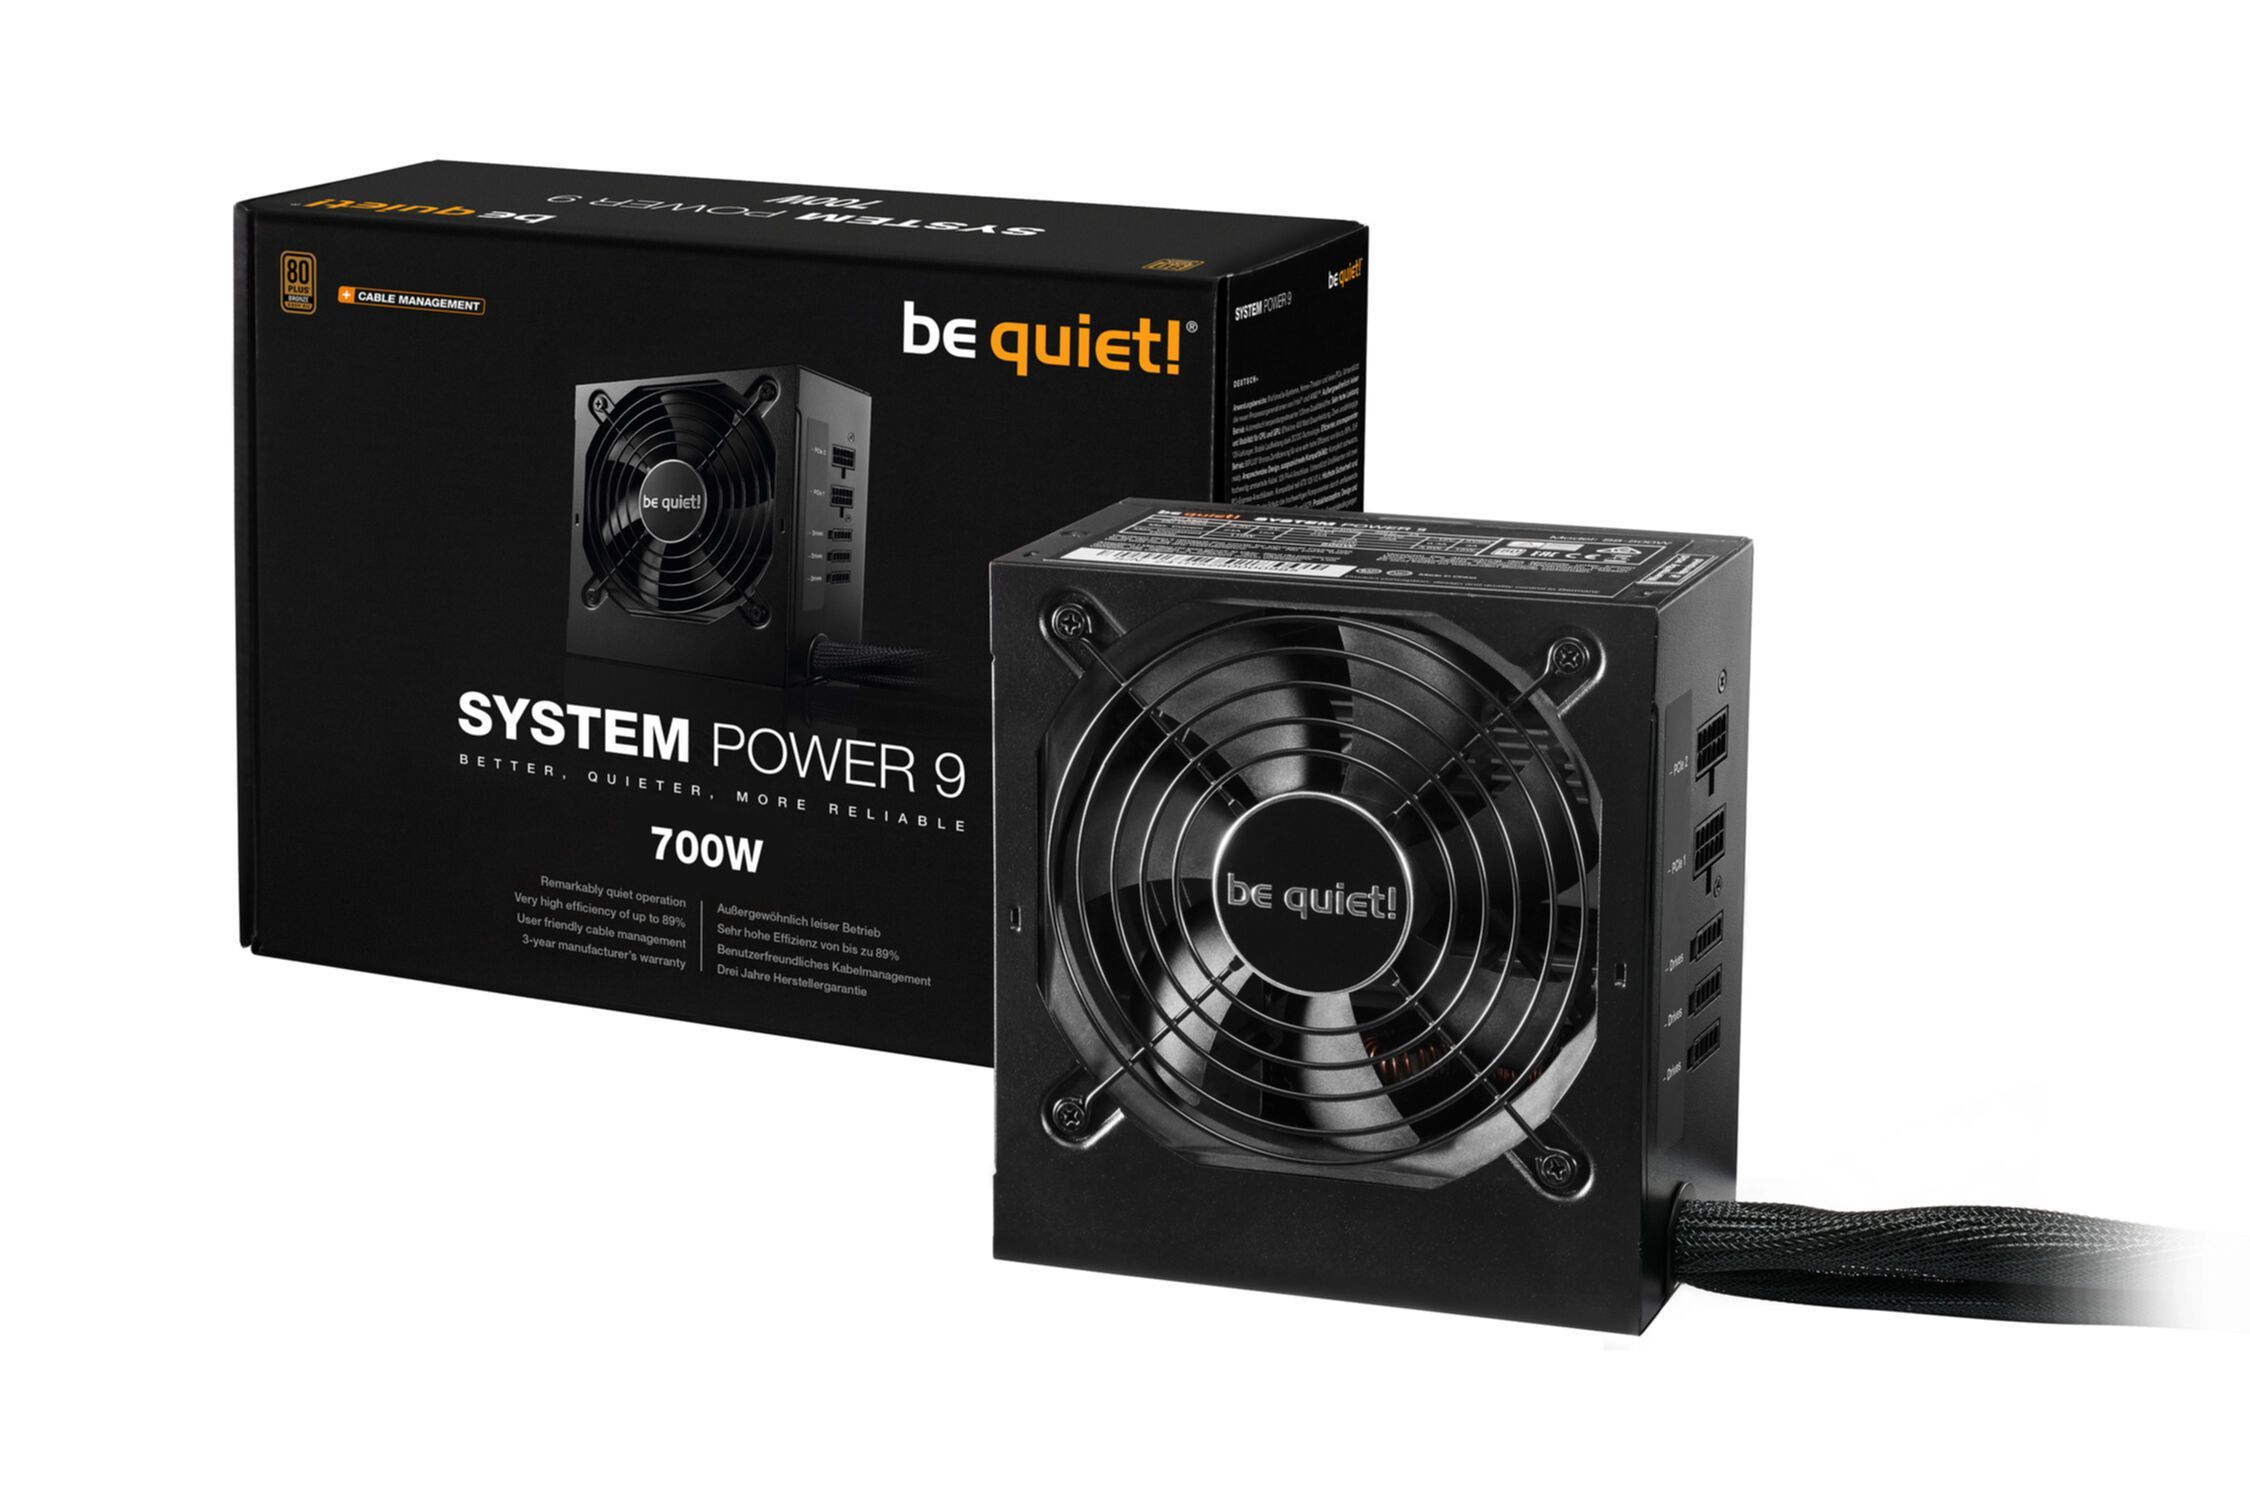 Power PC 700W 700 Watt 9 Netzteil CM System , BE QUIET!